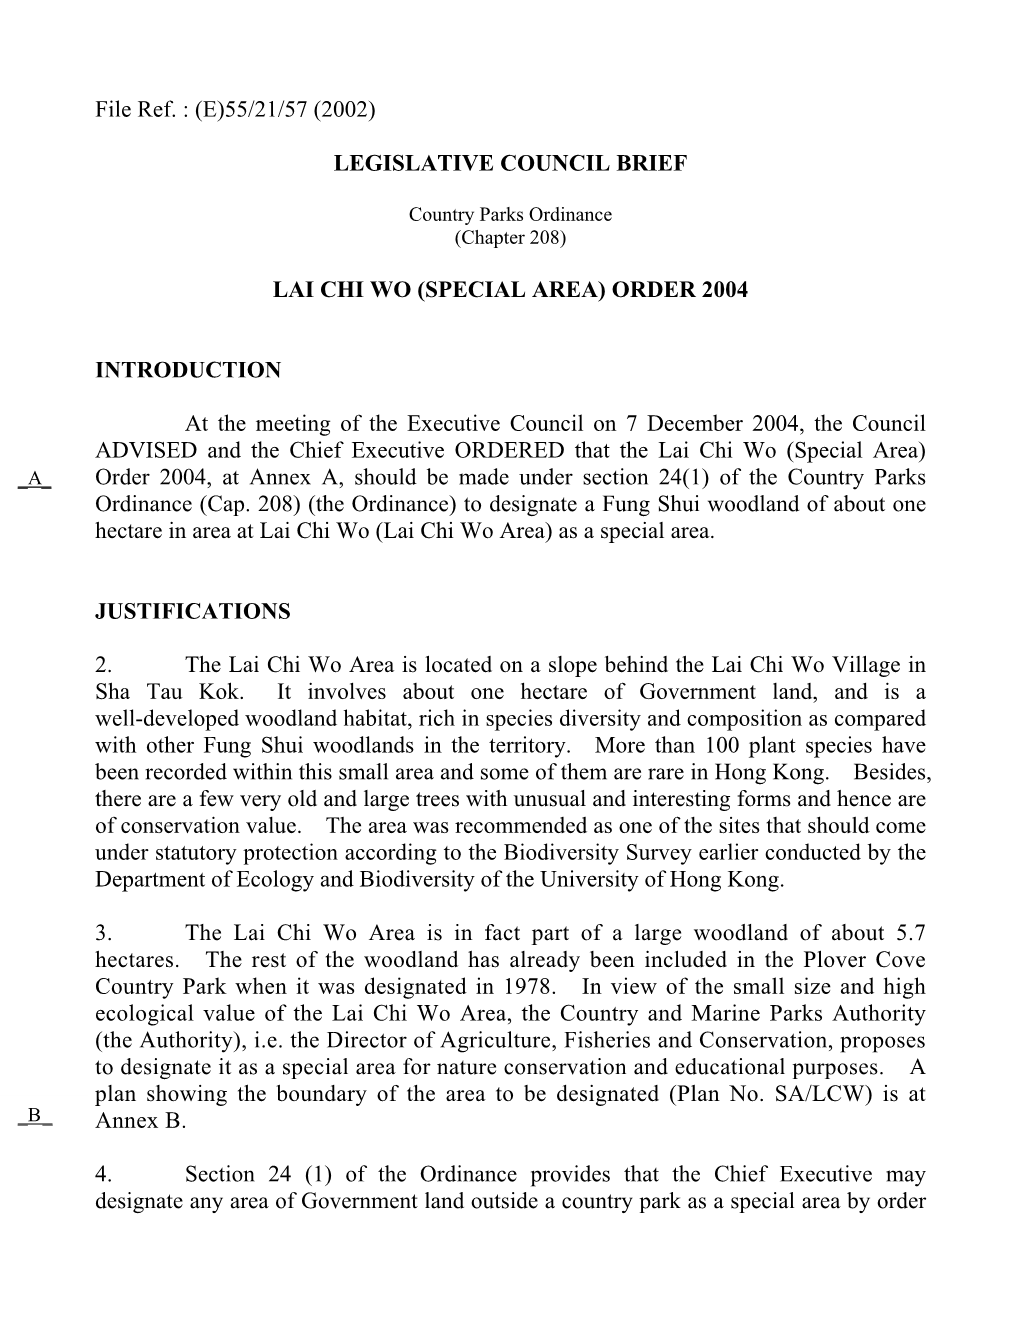 Legislative Council Brief Lai Chi Wo